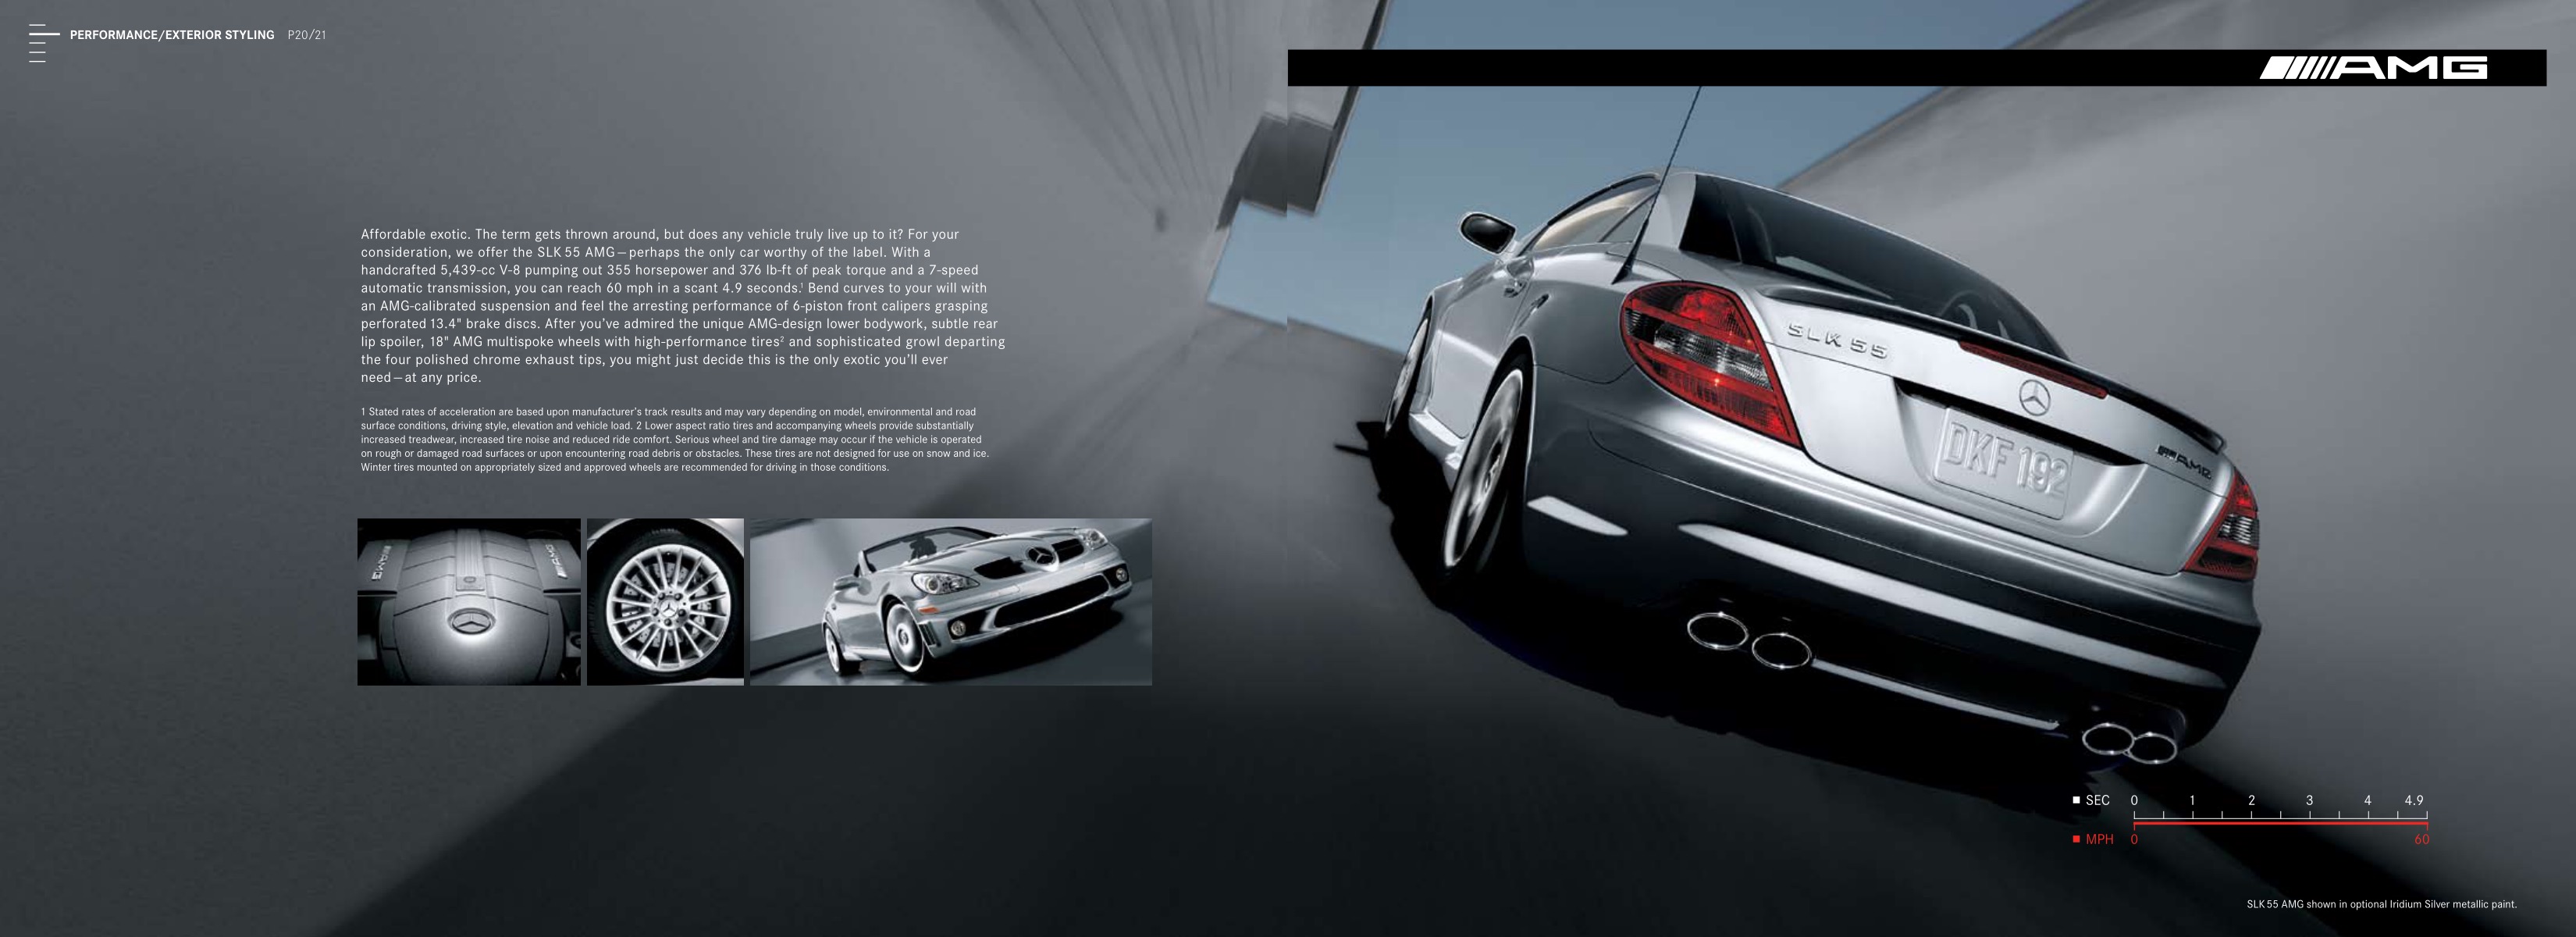 2007 Mercedes-Benz SLK Brochure Page 4